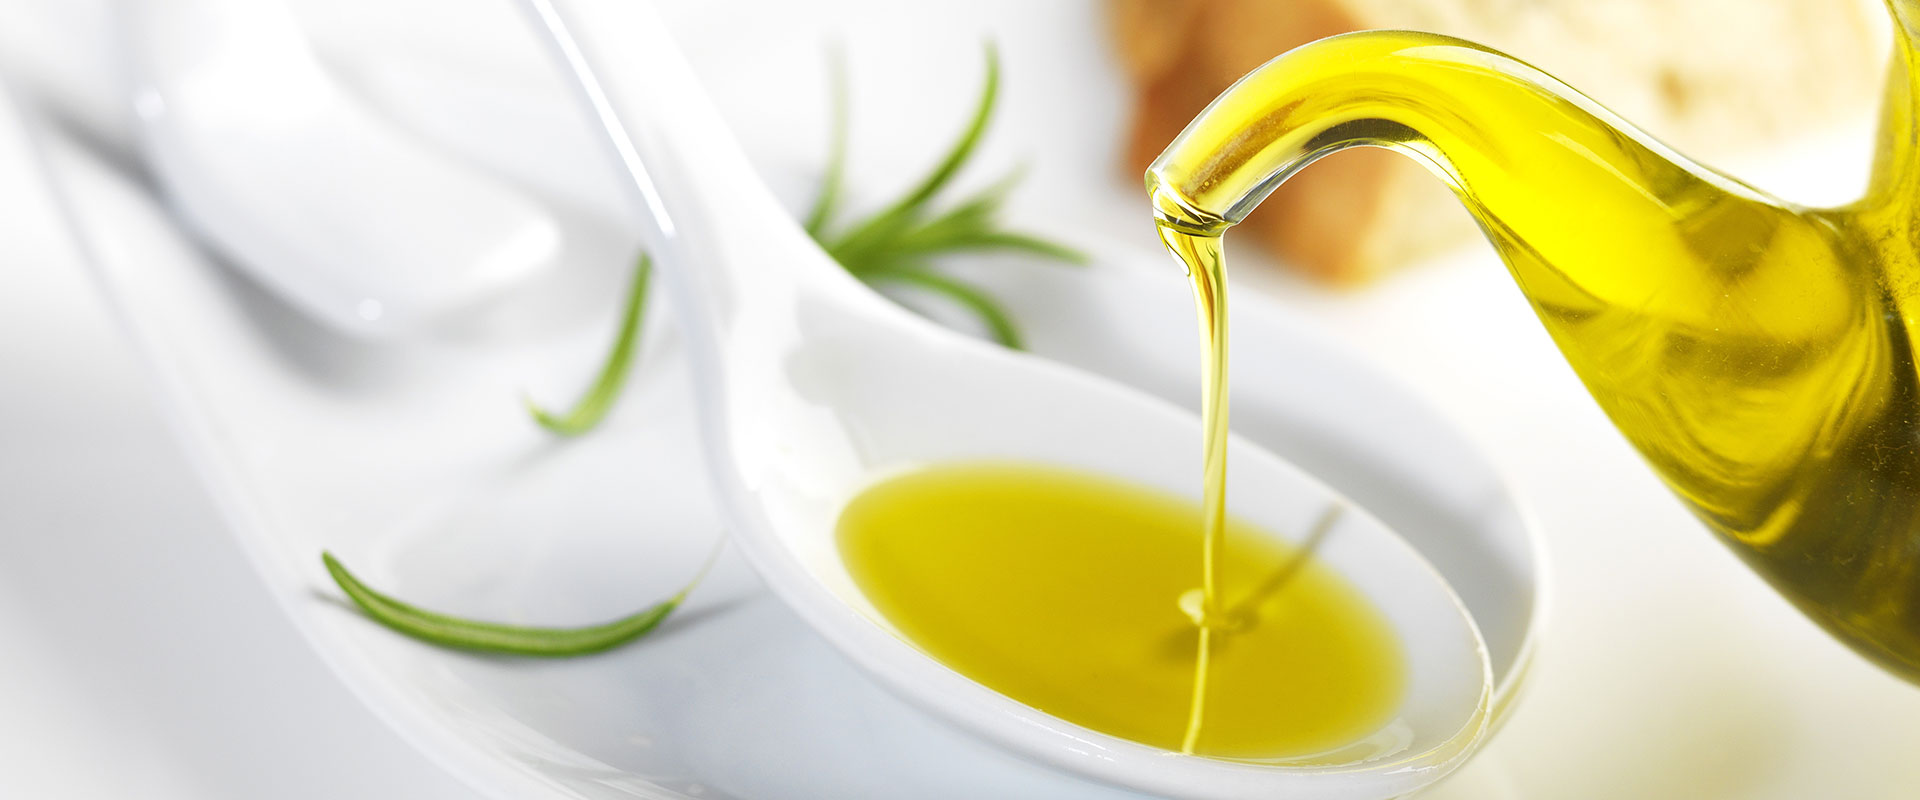 Gli acidi grassi dell'olio di oliva